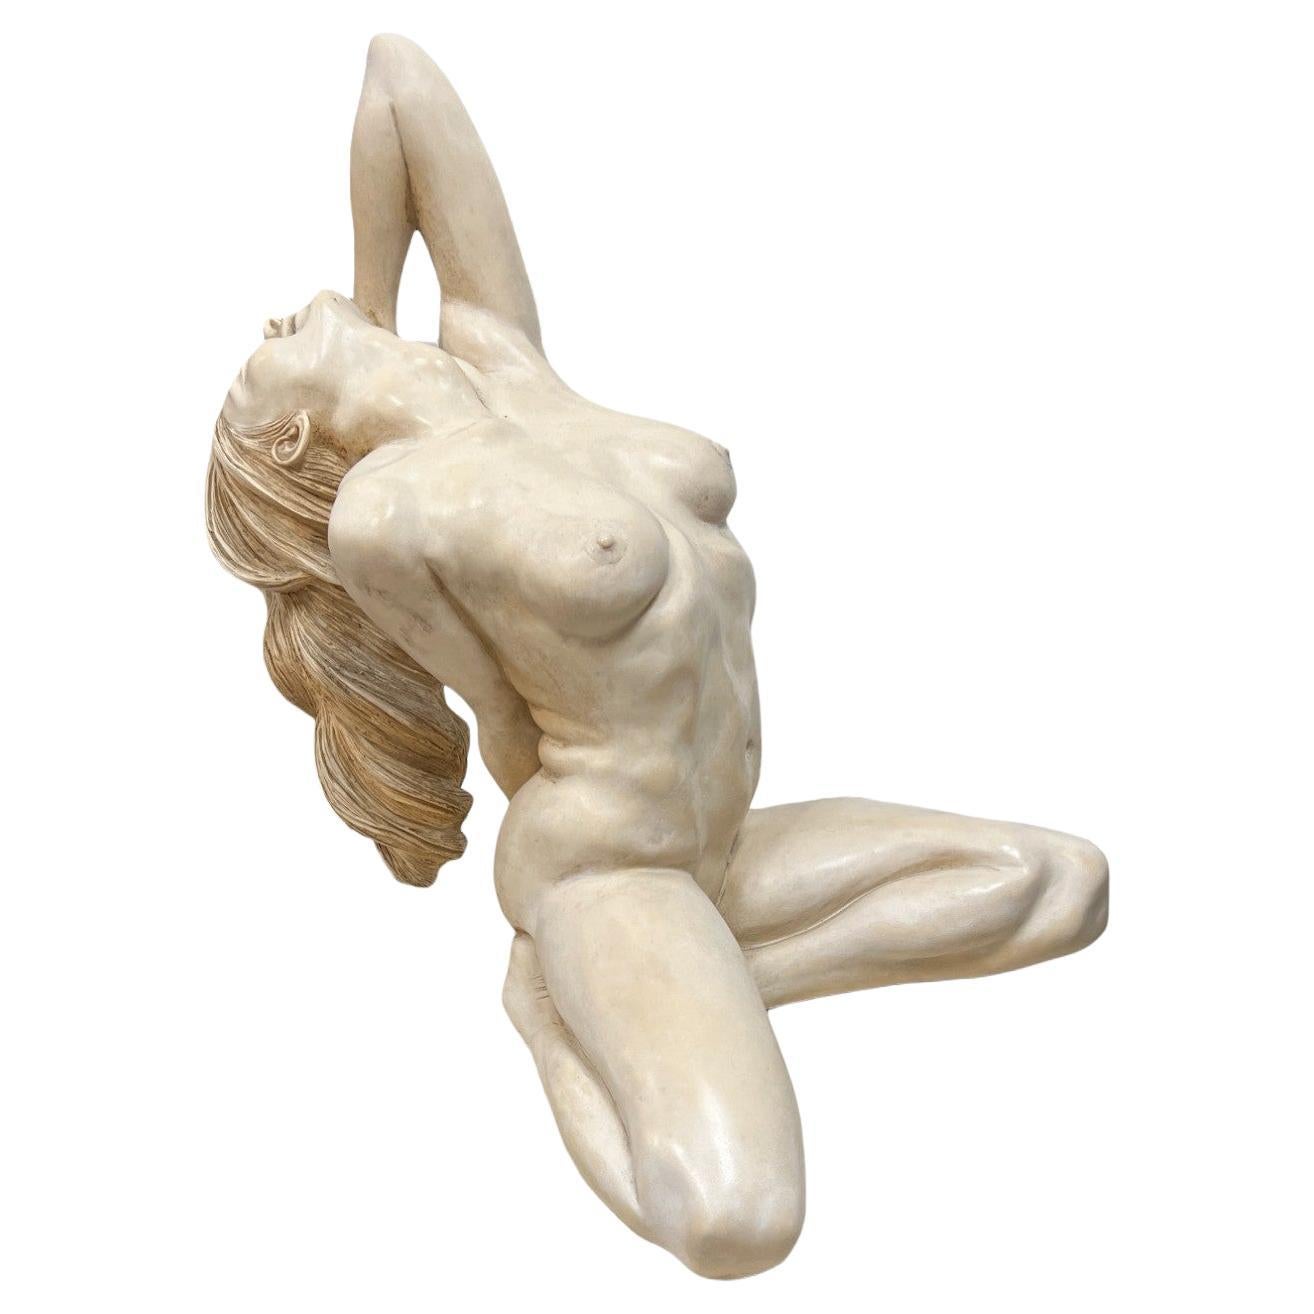 Sitzender, liegender weiblicher Akt Skulptur